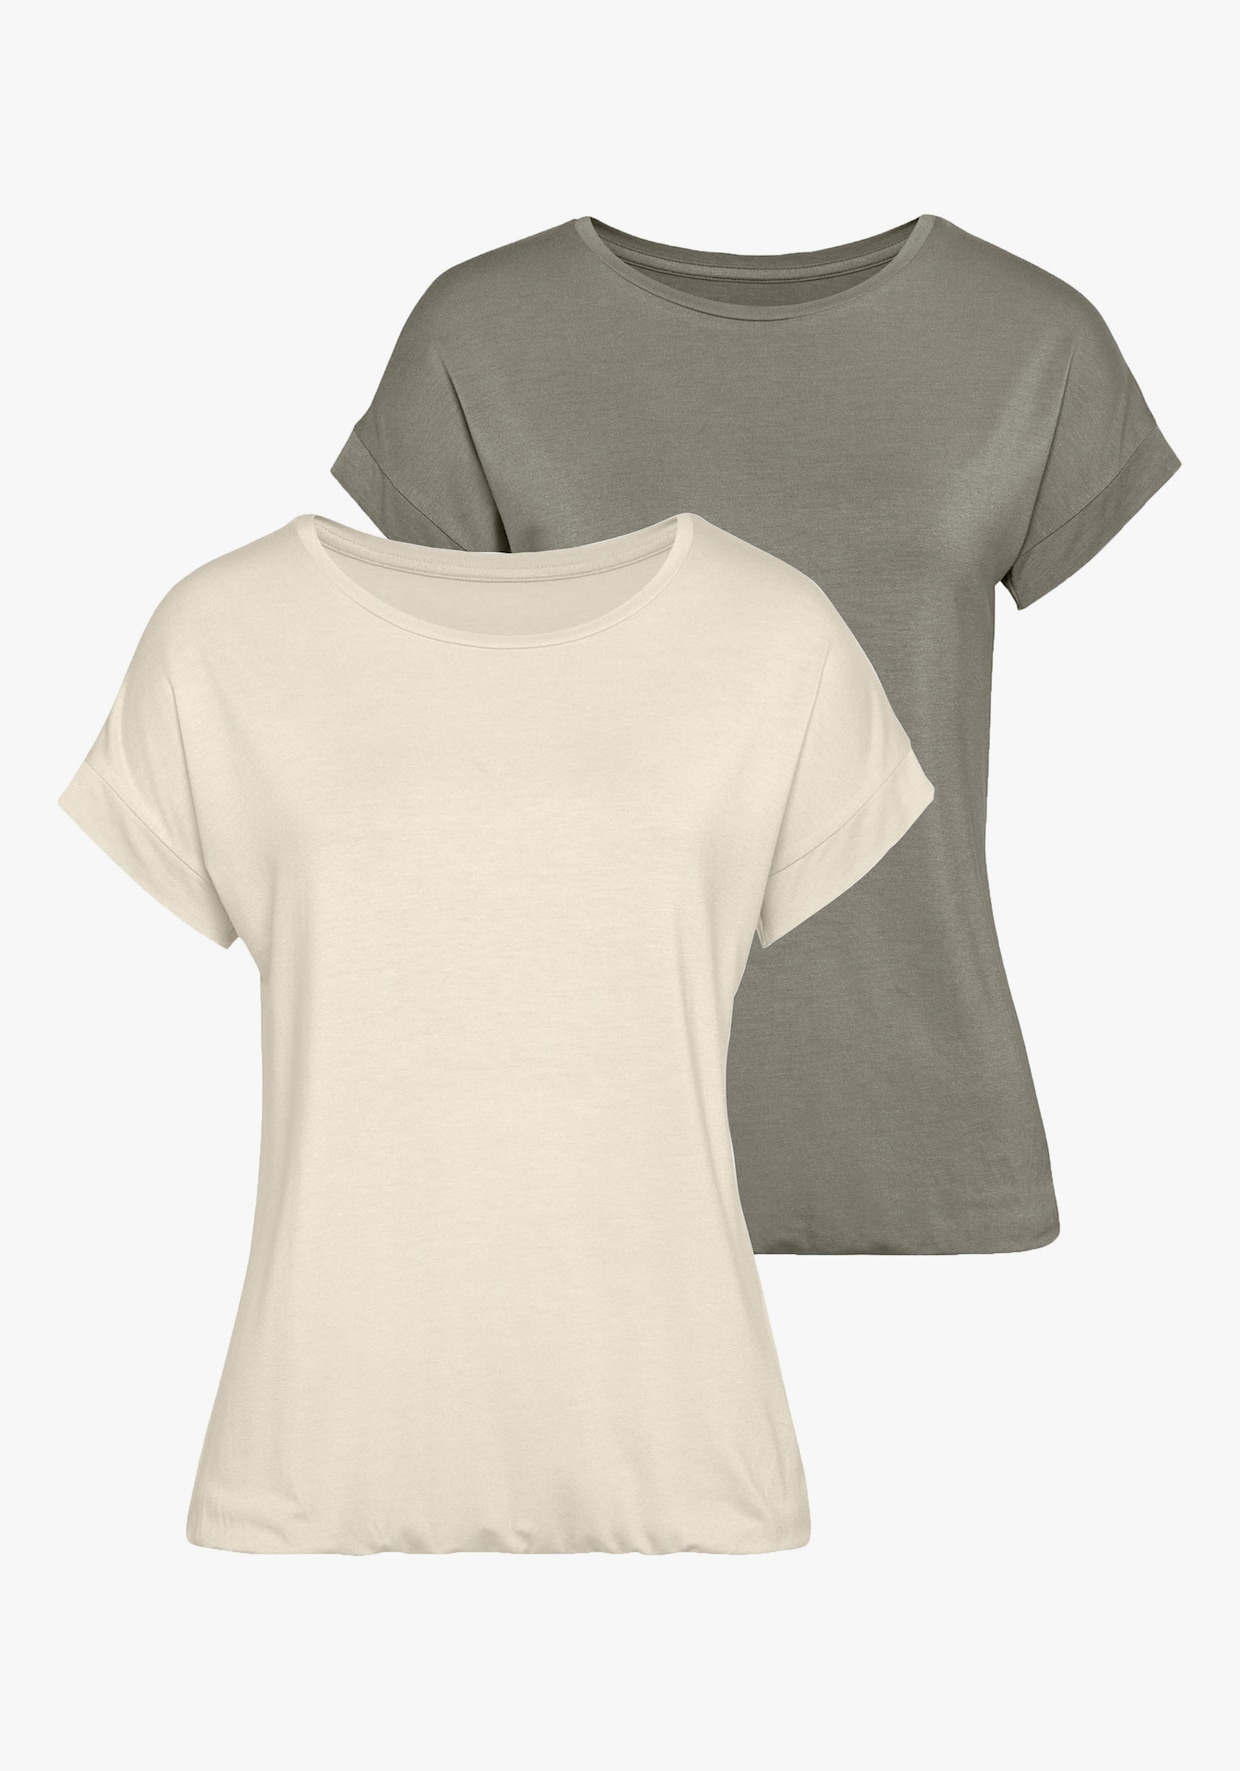 Vivance T-Shirt - beige, khaki